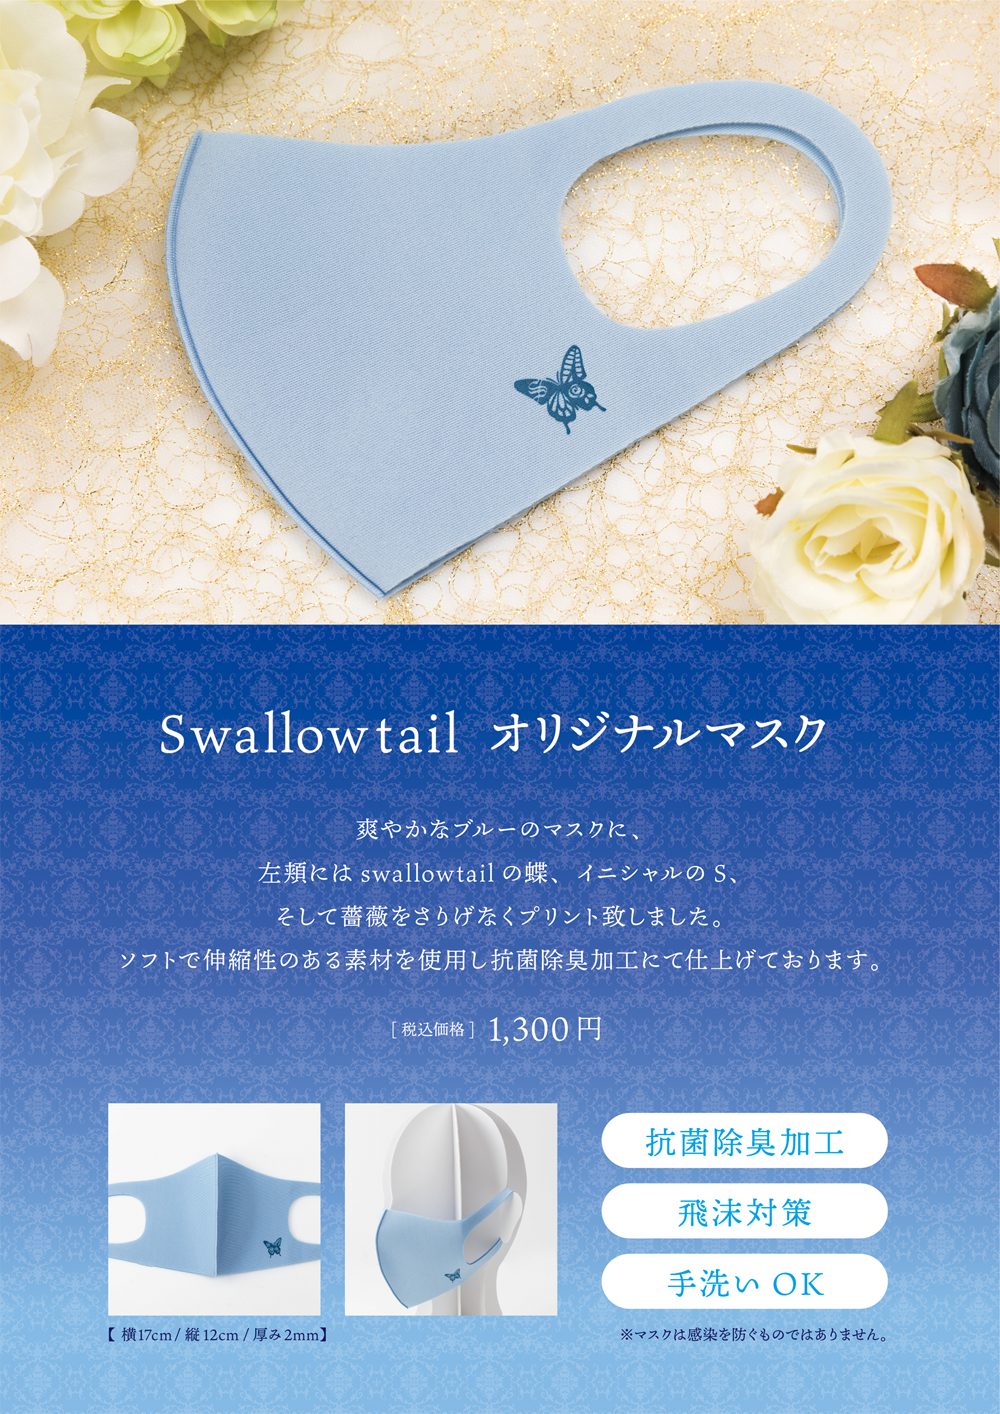 Swallowtail オリジナルマスク発売のお知らせ